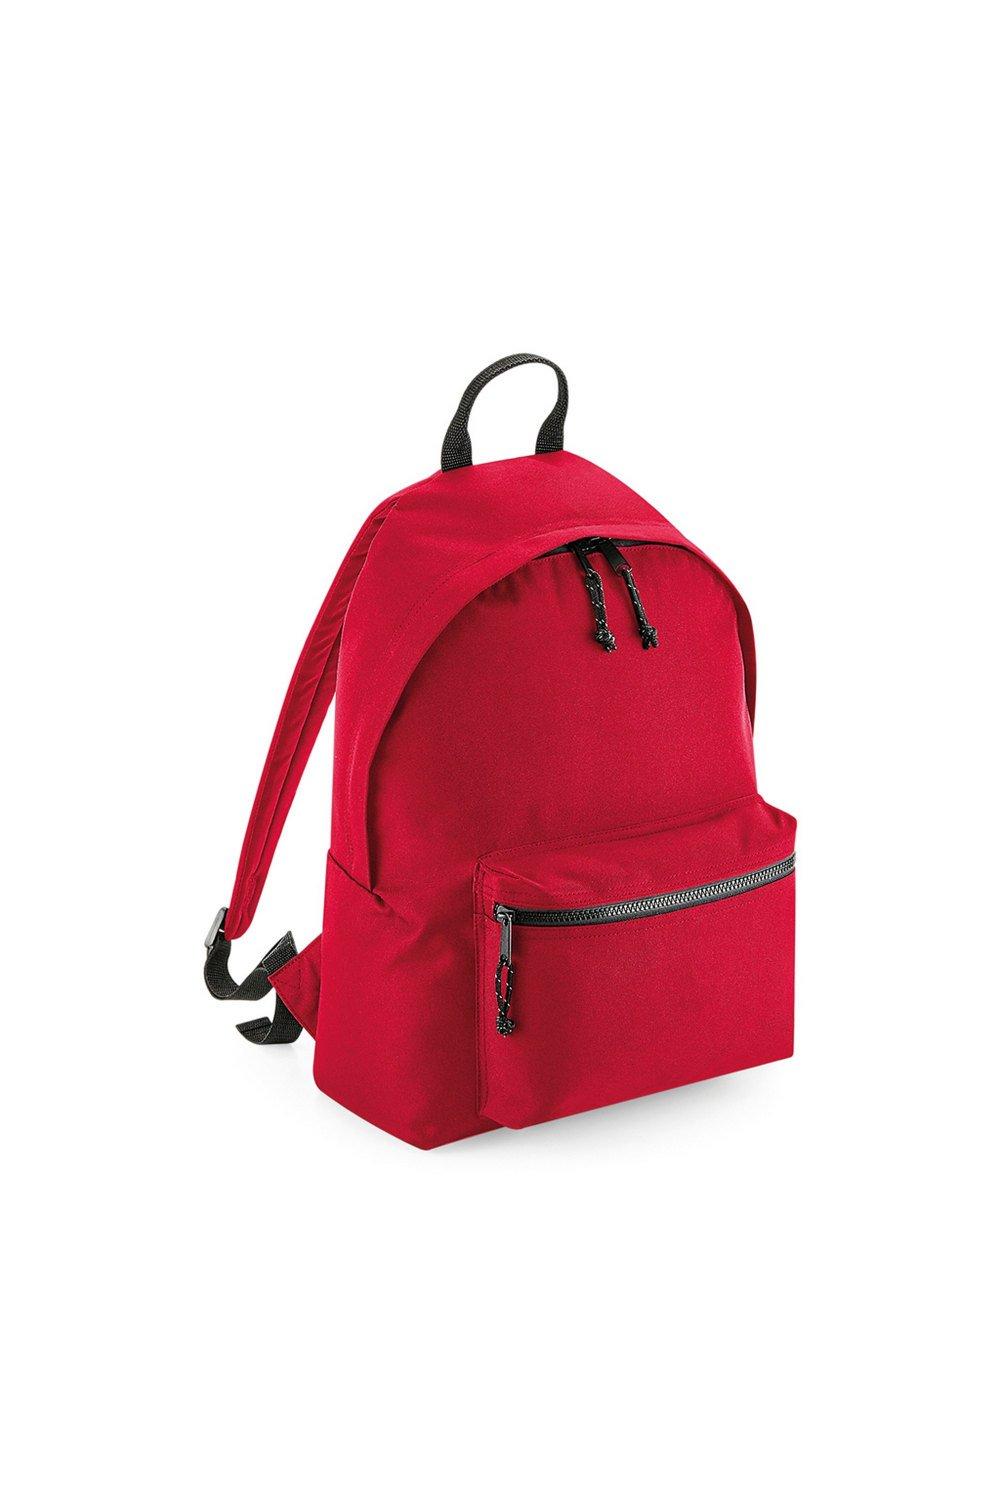 Переработанный рюкзак Bagbase, красный